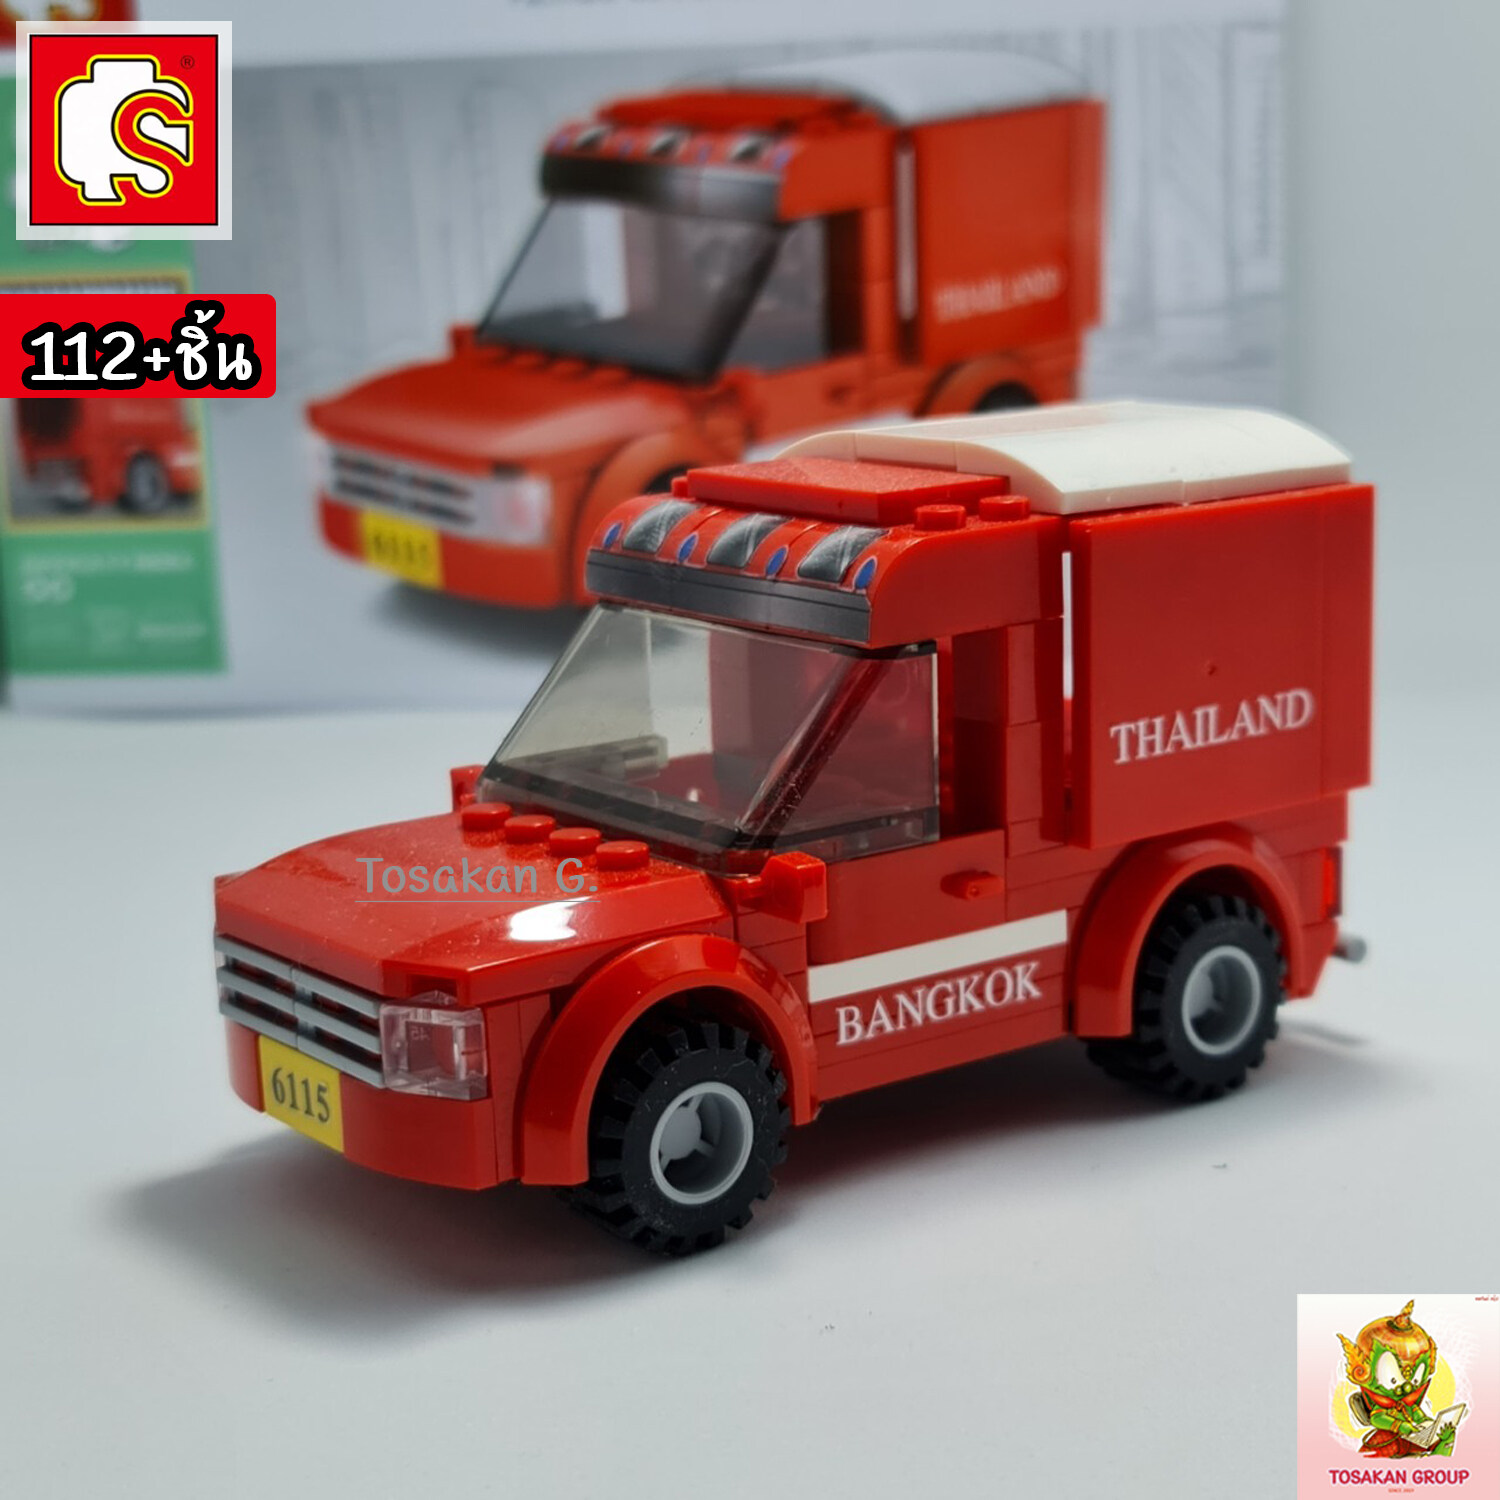 ตัวต่อเลโก้ Sembo Block ยานพาหนะ ไทยสไตล์ ของเล่น ของสะสม ตั้งโชว์ เสริมทักษะ สมาธิ กิจกรรมยามว่างในครอบครัว (สินค้าพร้อมส่ง) สี รถไปรษณีย์ไทย สี รถไปรษณีย์ไทย